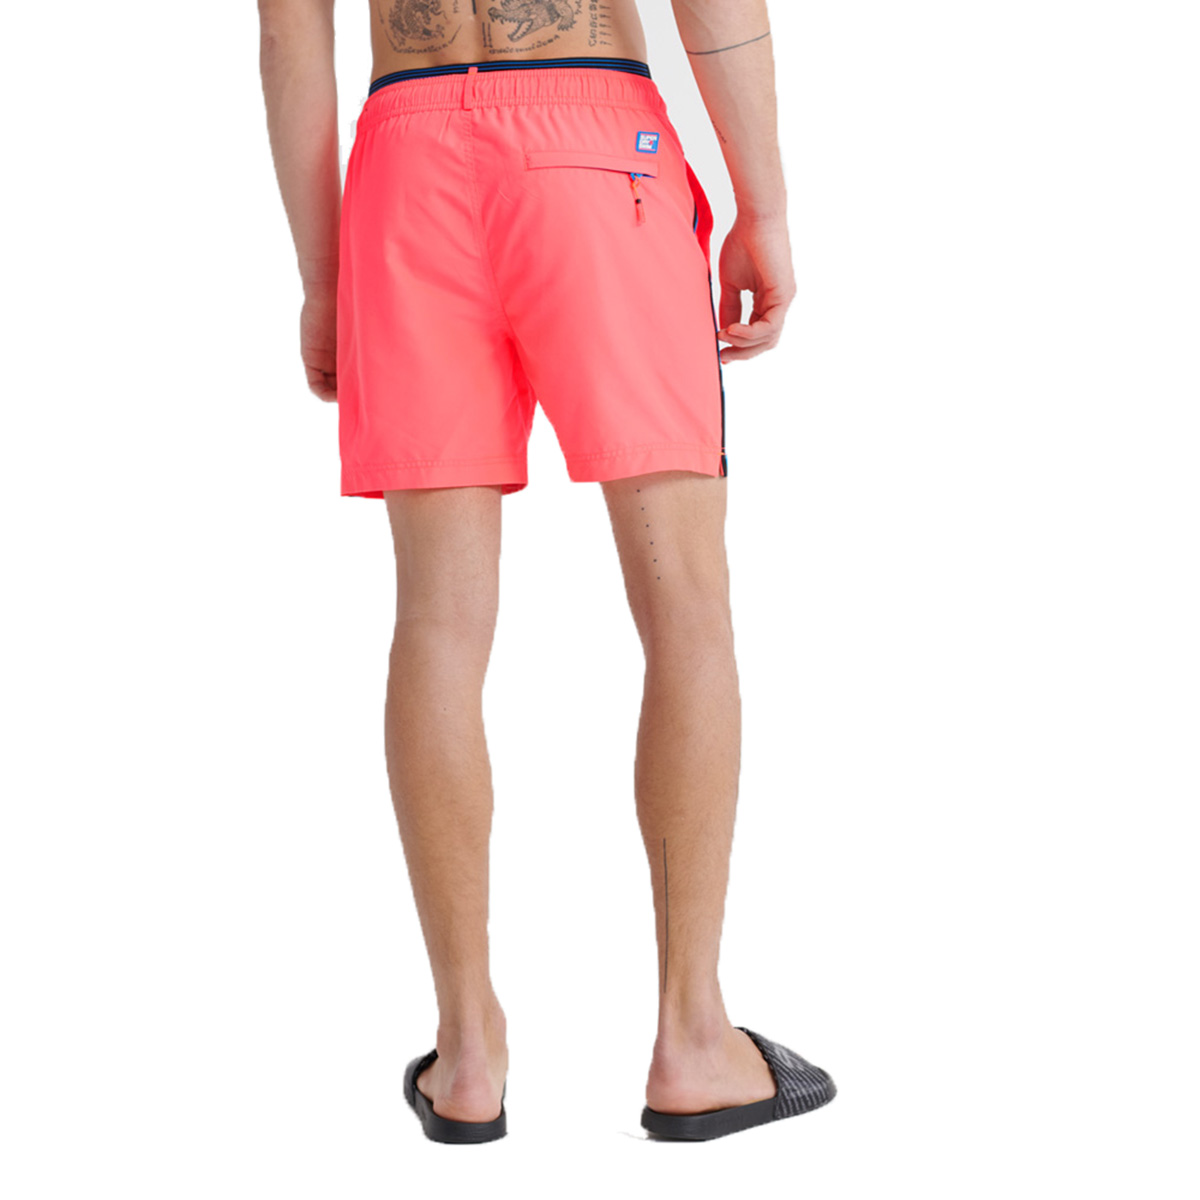 Superdry Herren State Volley Swim Short Schwimmhose Shorts M3010010A pink